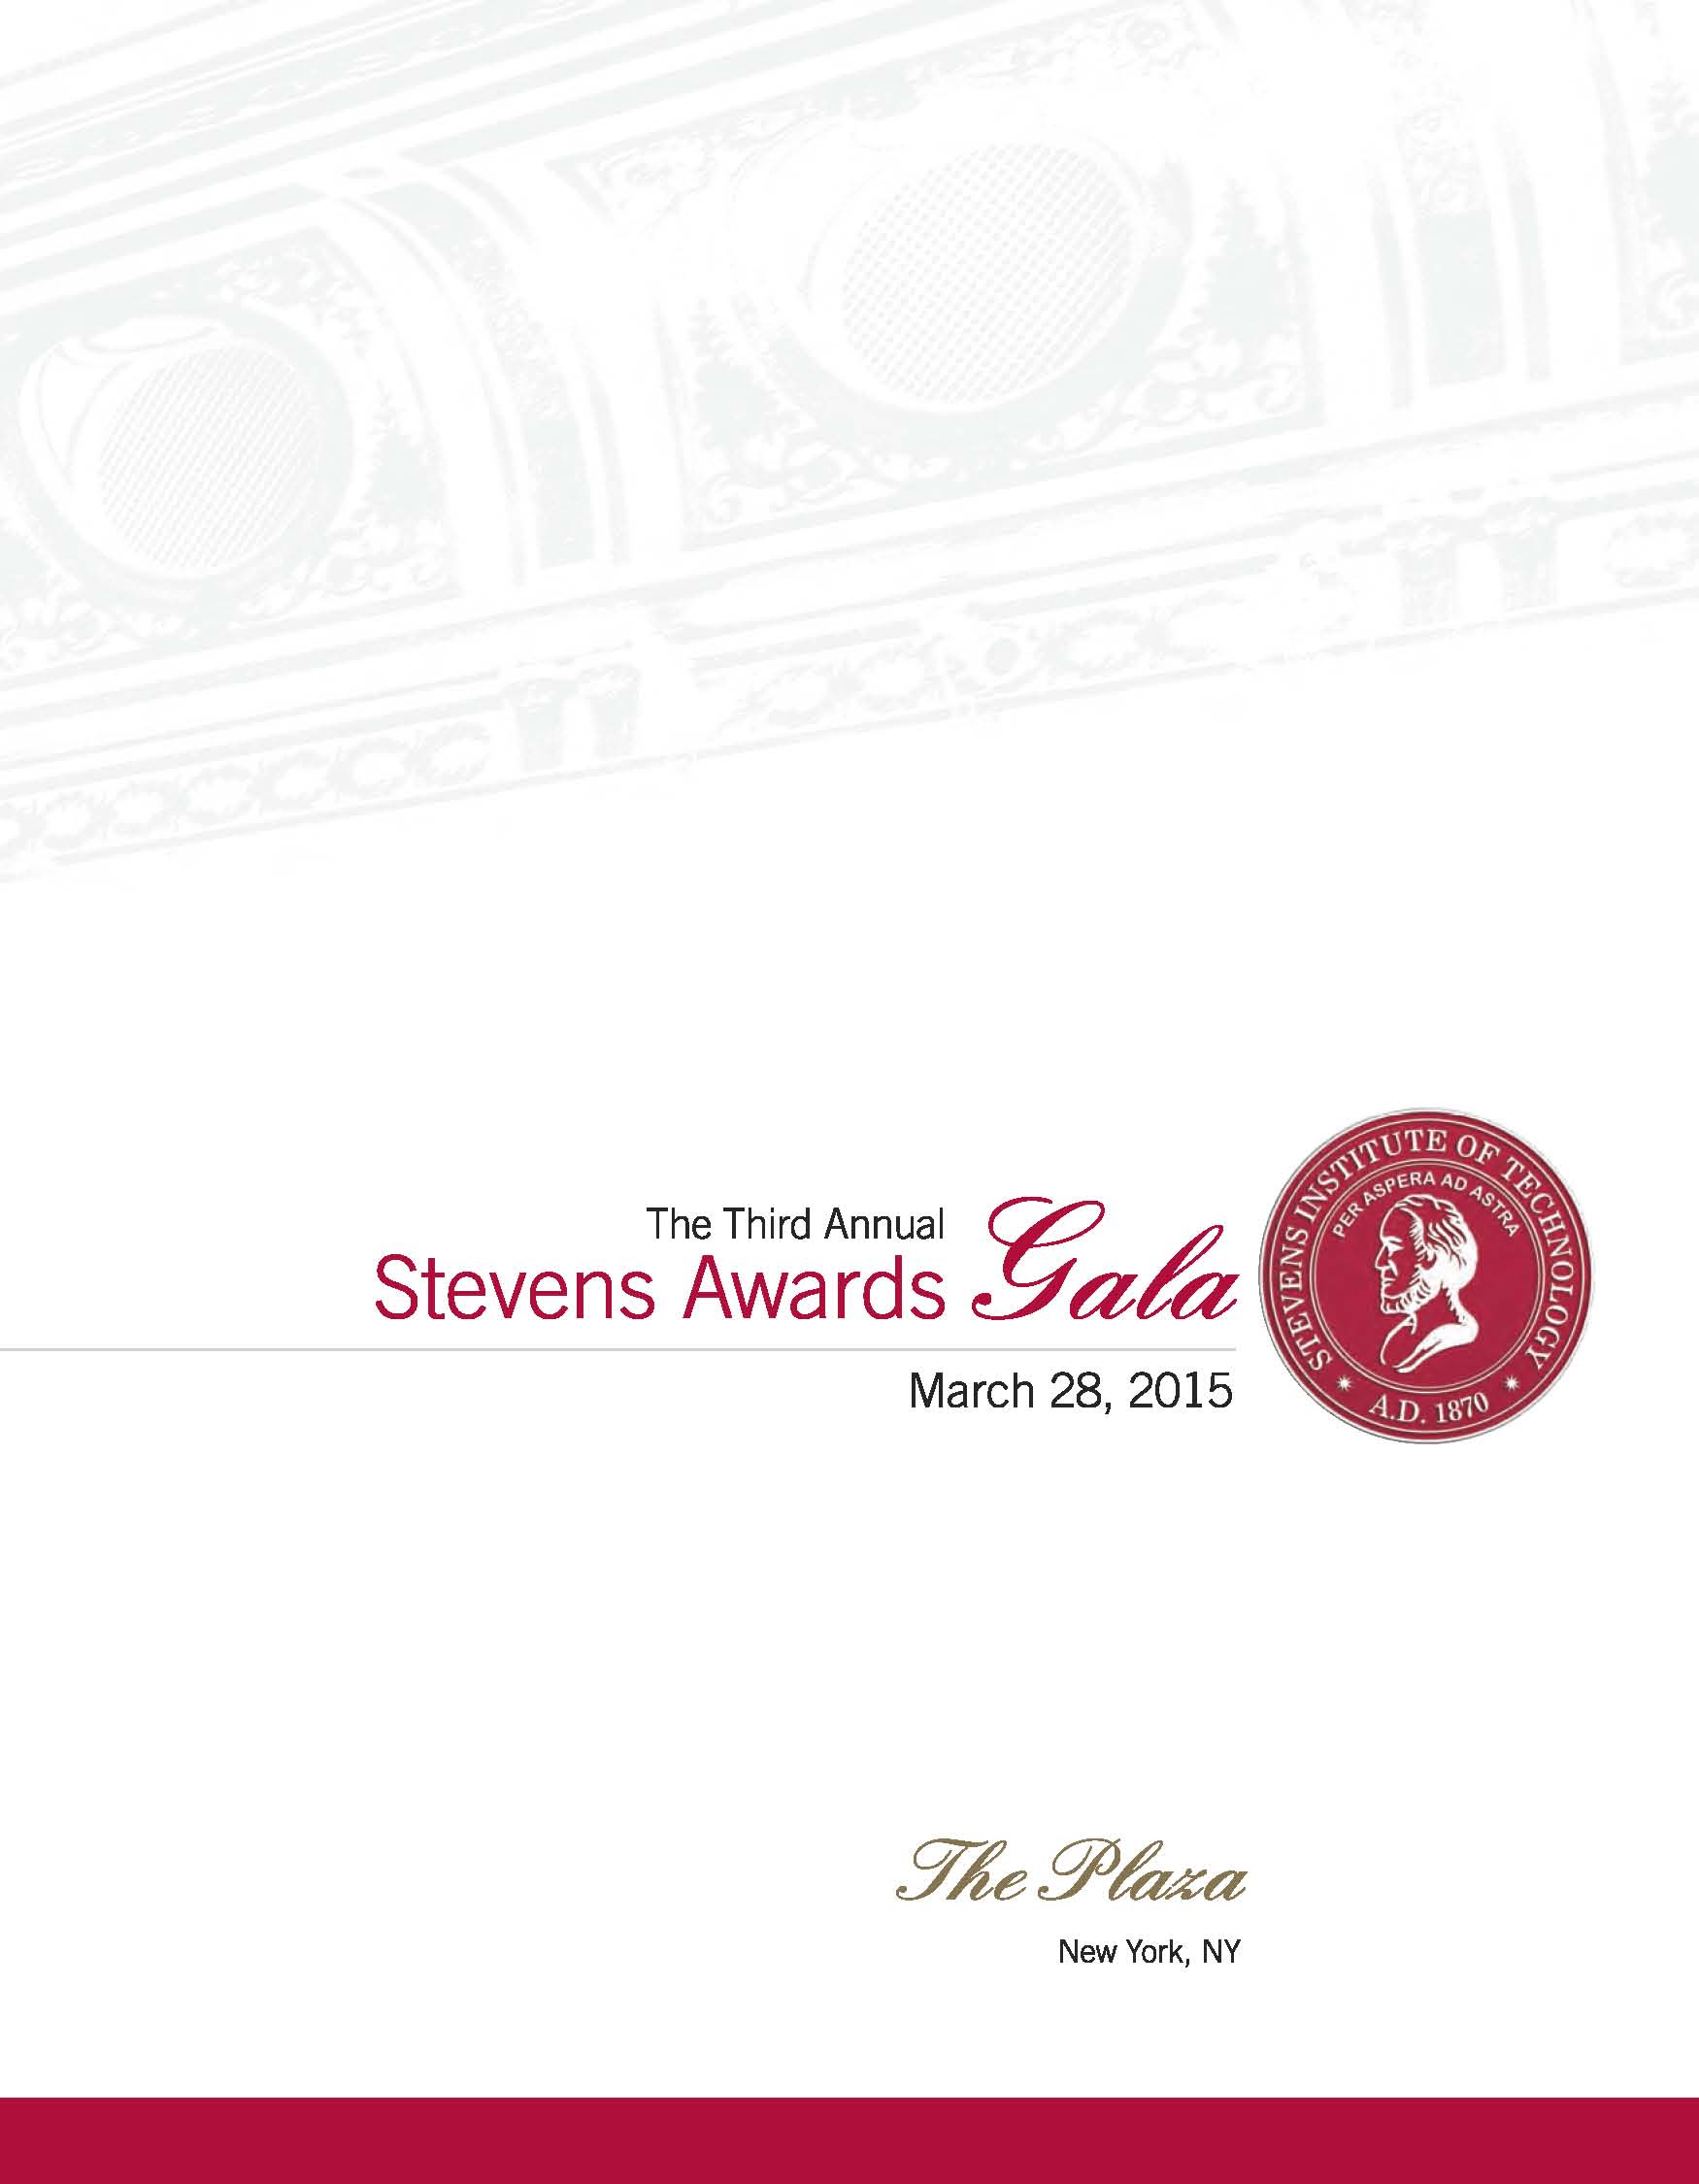 Program for the 3rd Annual Stevens Awards Gala